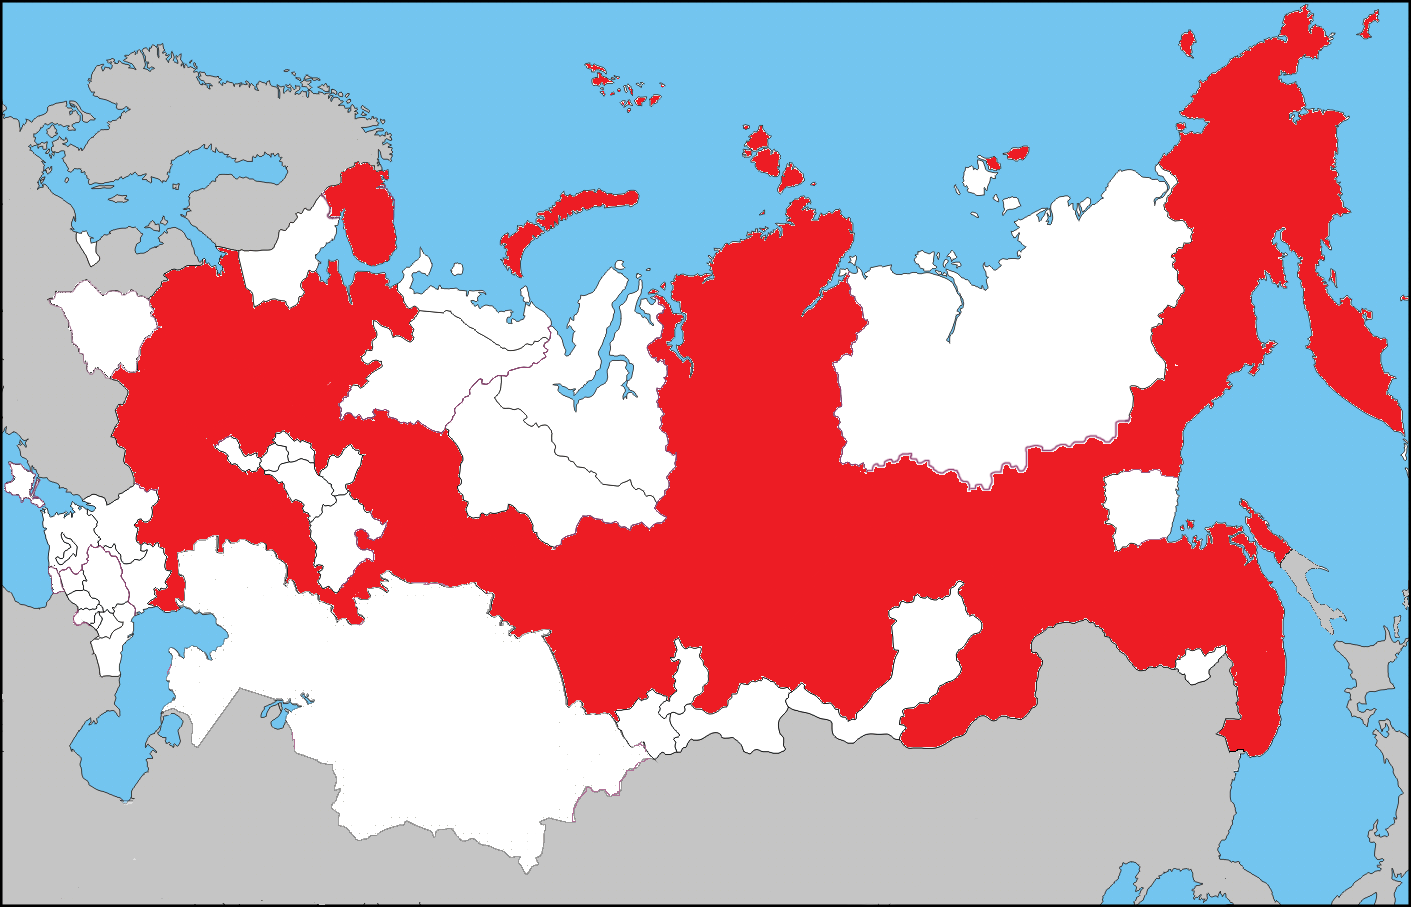 Современное государство российская федерация республики